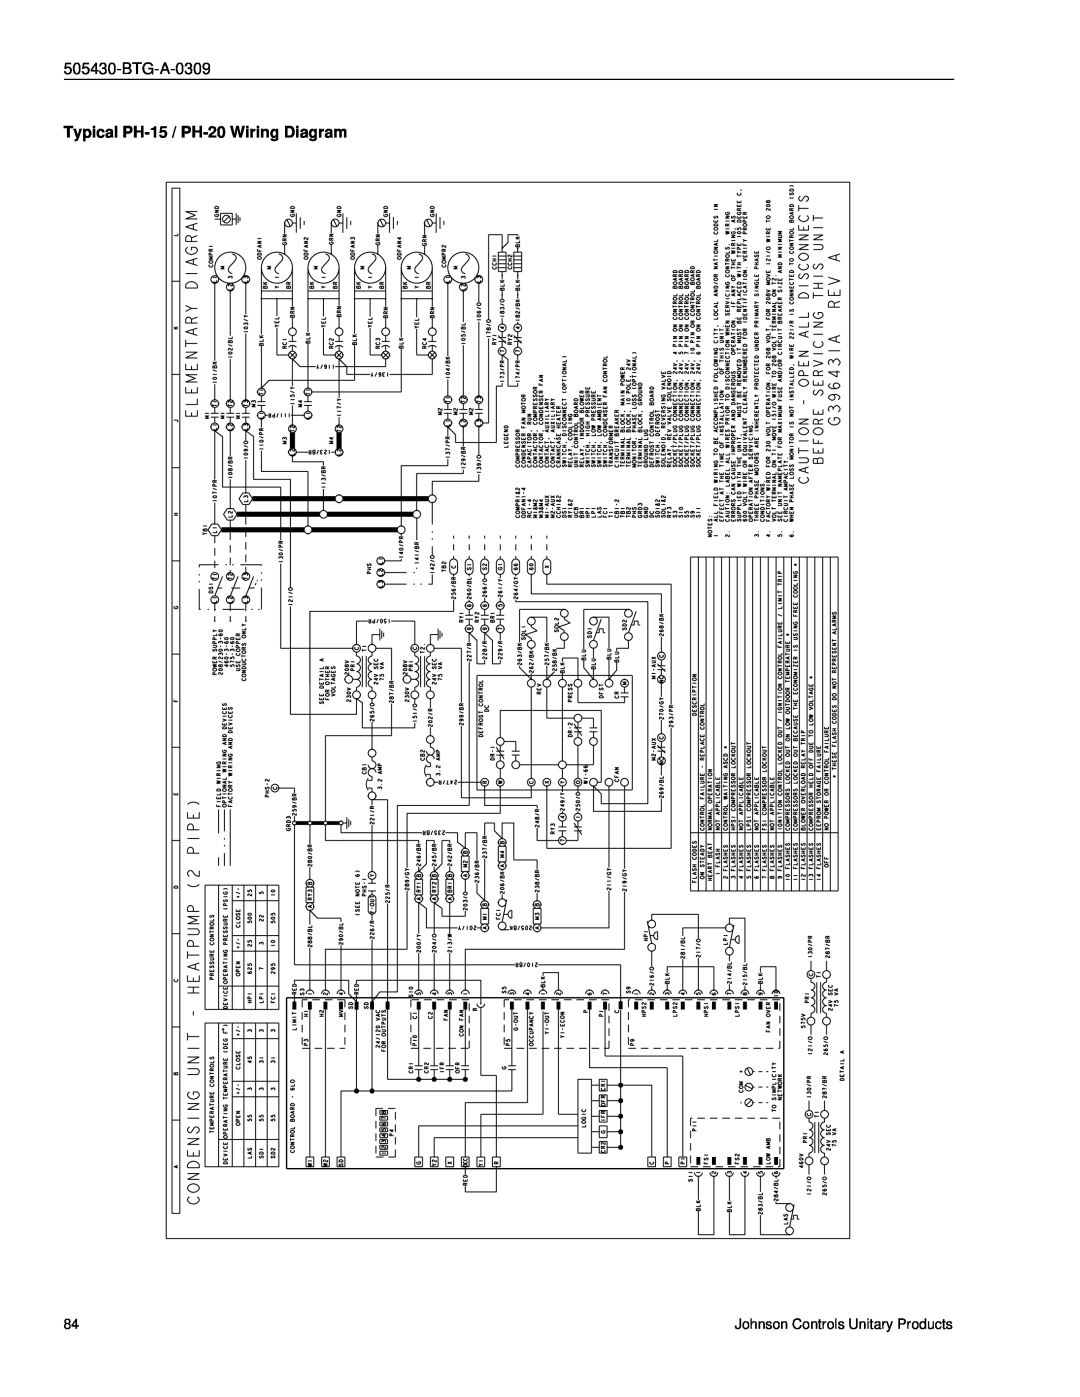 Johnson Controls R-410A manual Typical PH-15 / PH-20Wiring Diagram, BTG-A-0309 